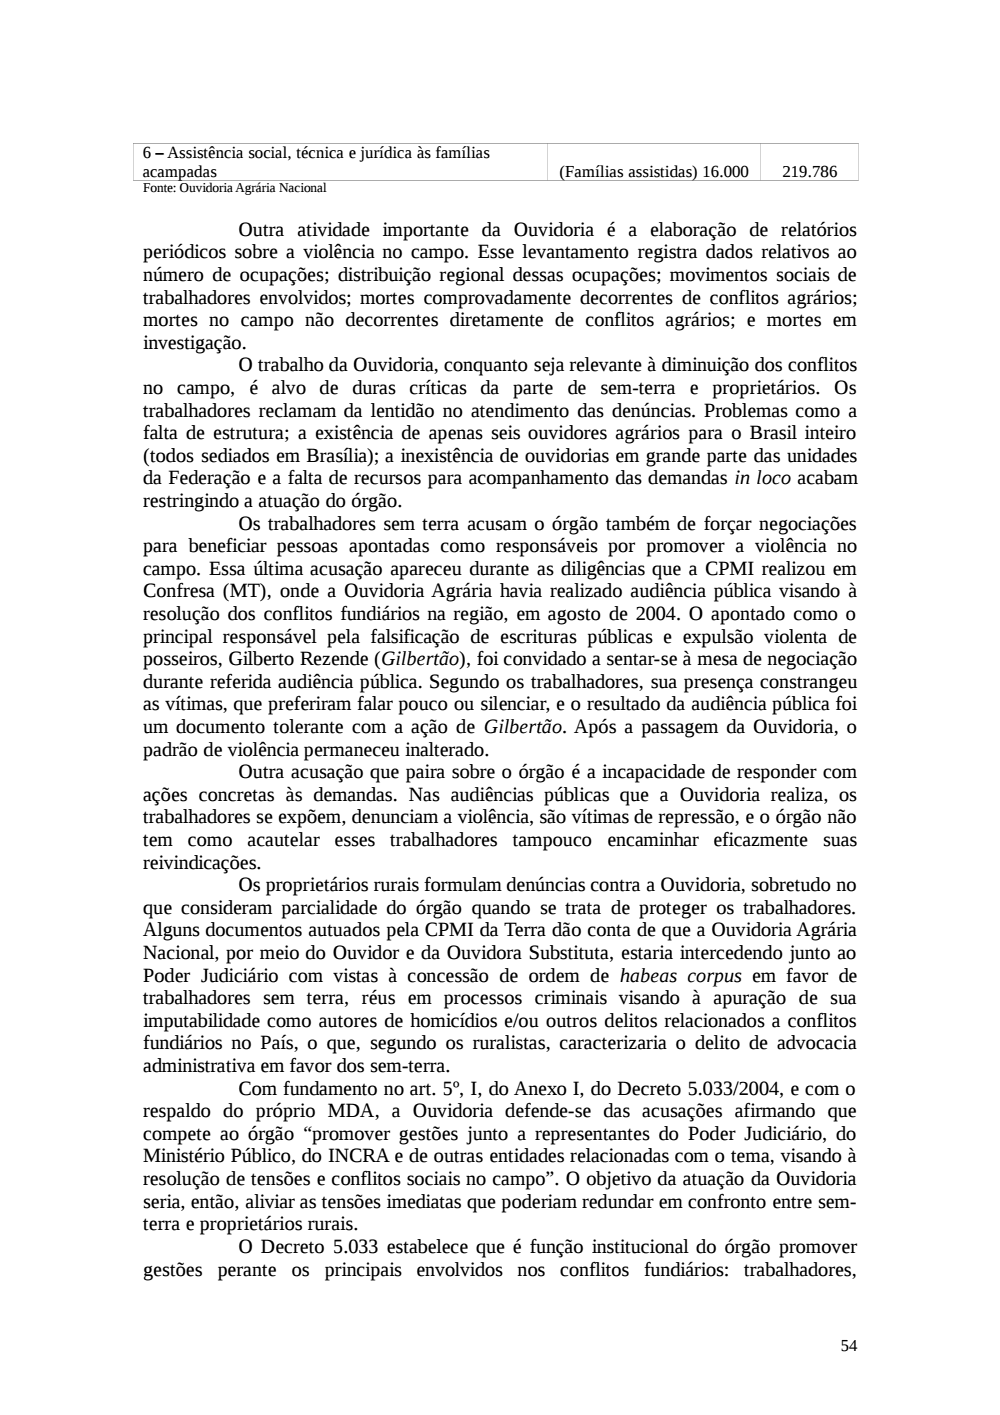 Page 54 from Relatório final da comissão